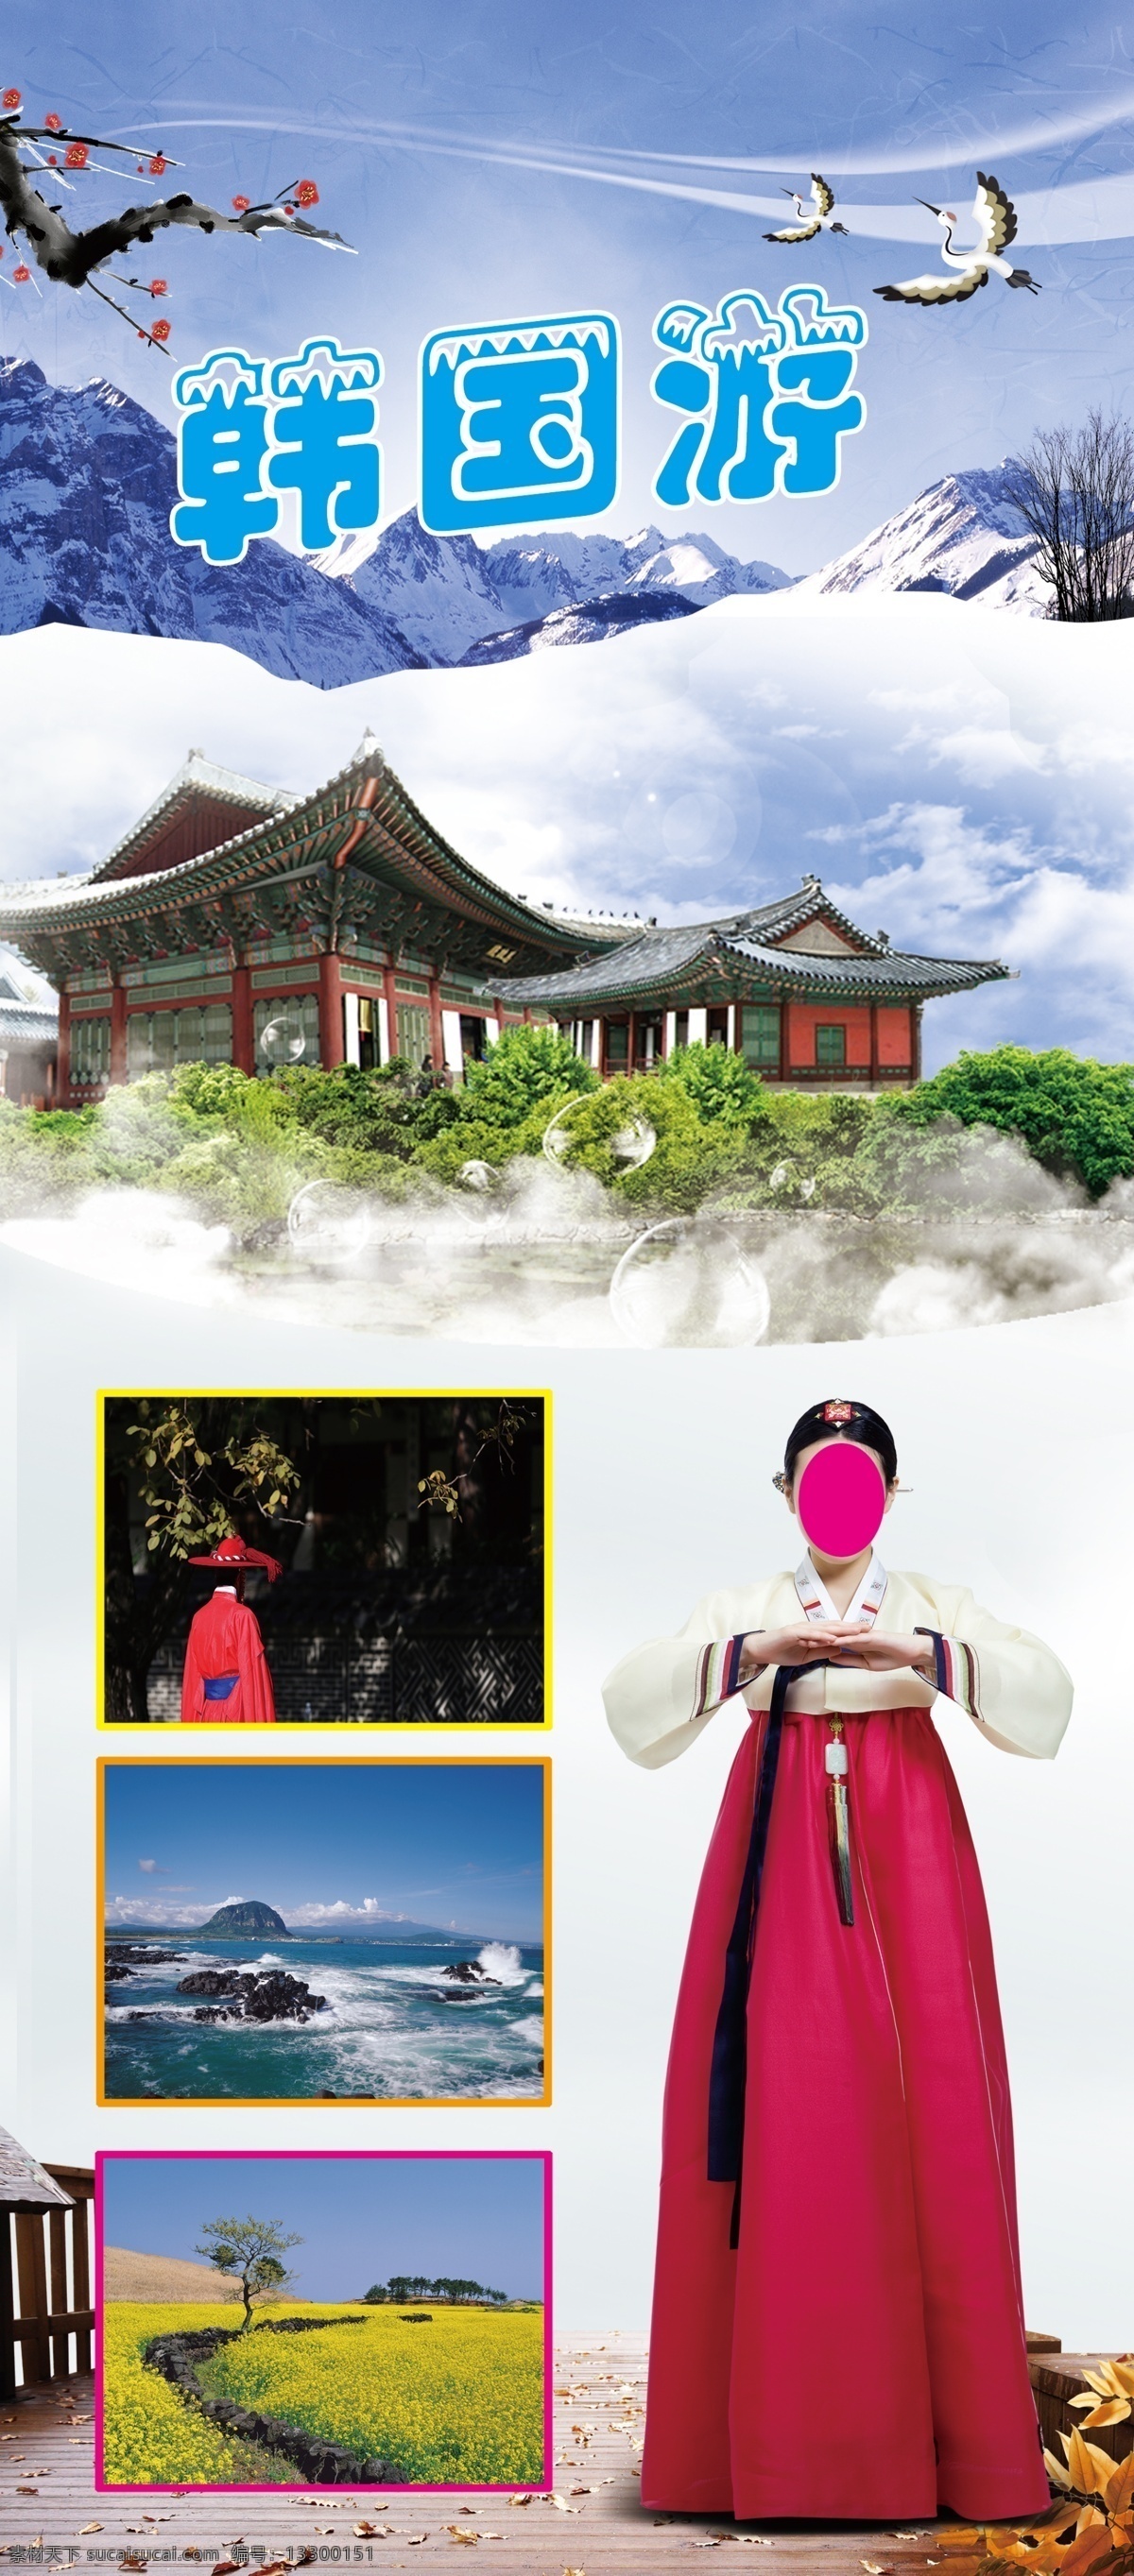 韩国游易拉宝 韩国 冬季 雪 宫殿 礼仪 白色